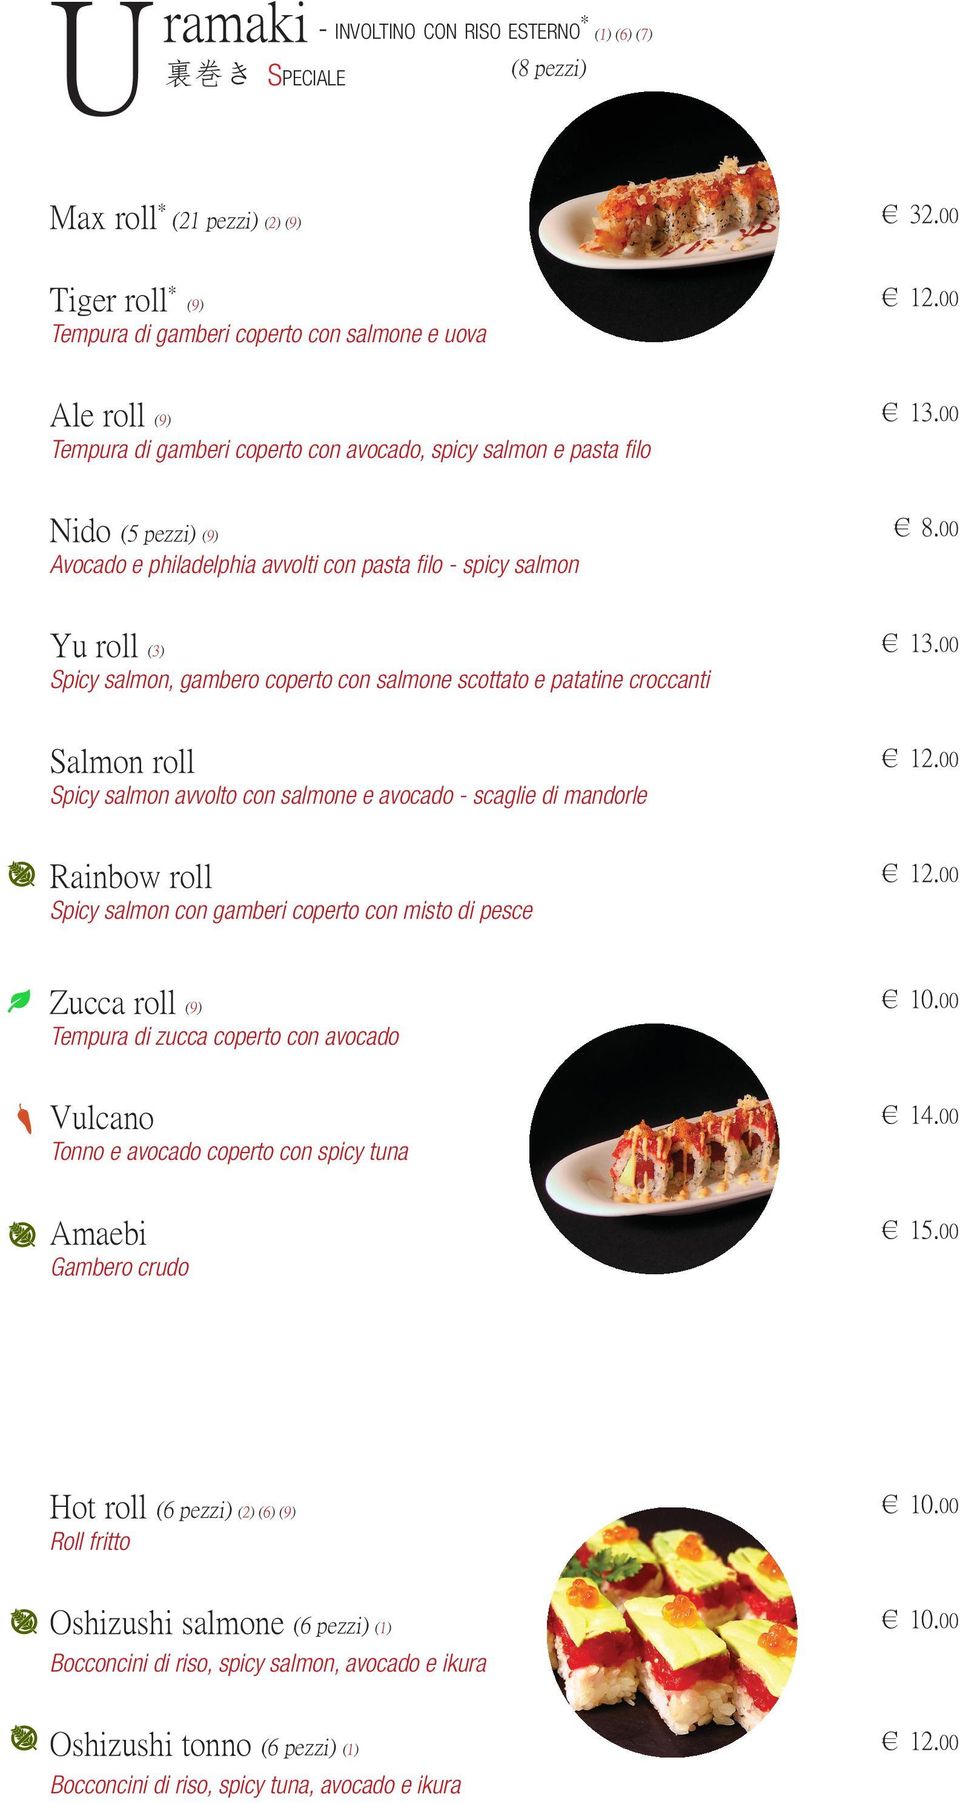 pasta filo - spicy salmon 8.